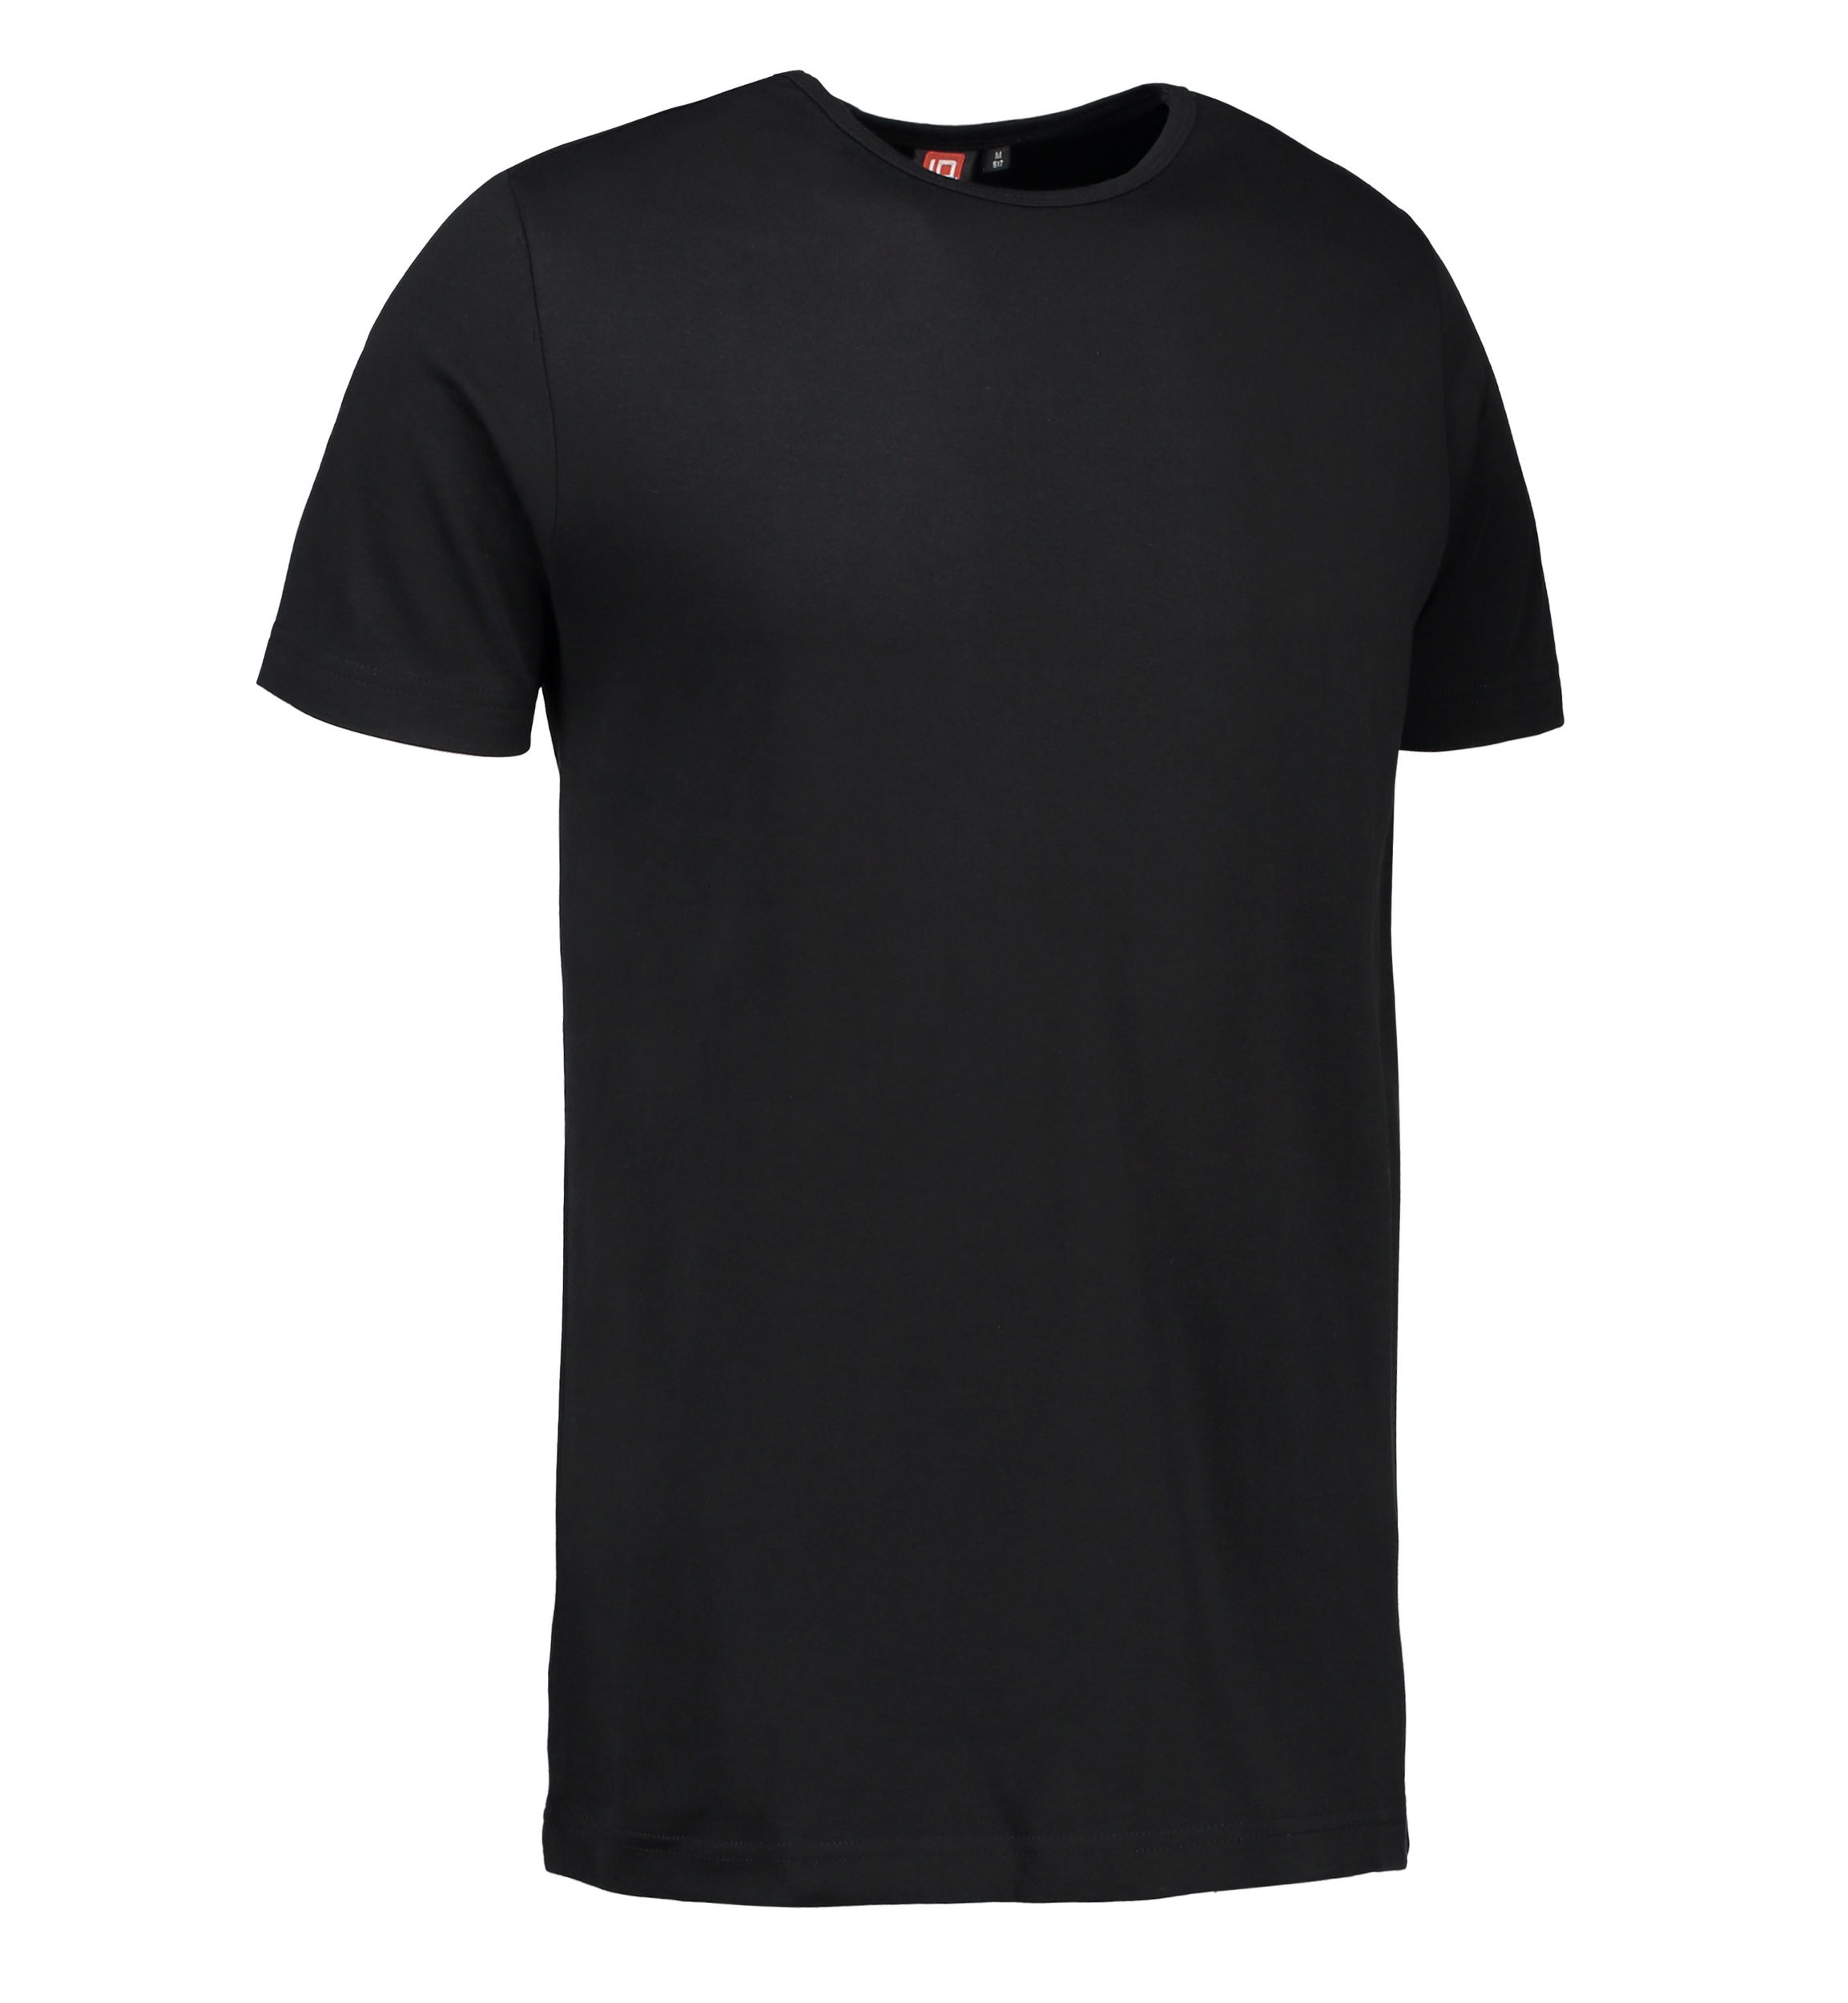 Billede af Sort t-shirt med rund hals til mænd - 2XL hos Sygeplejebutikken.dk